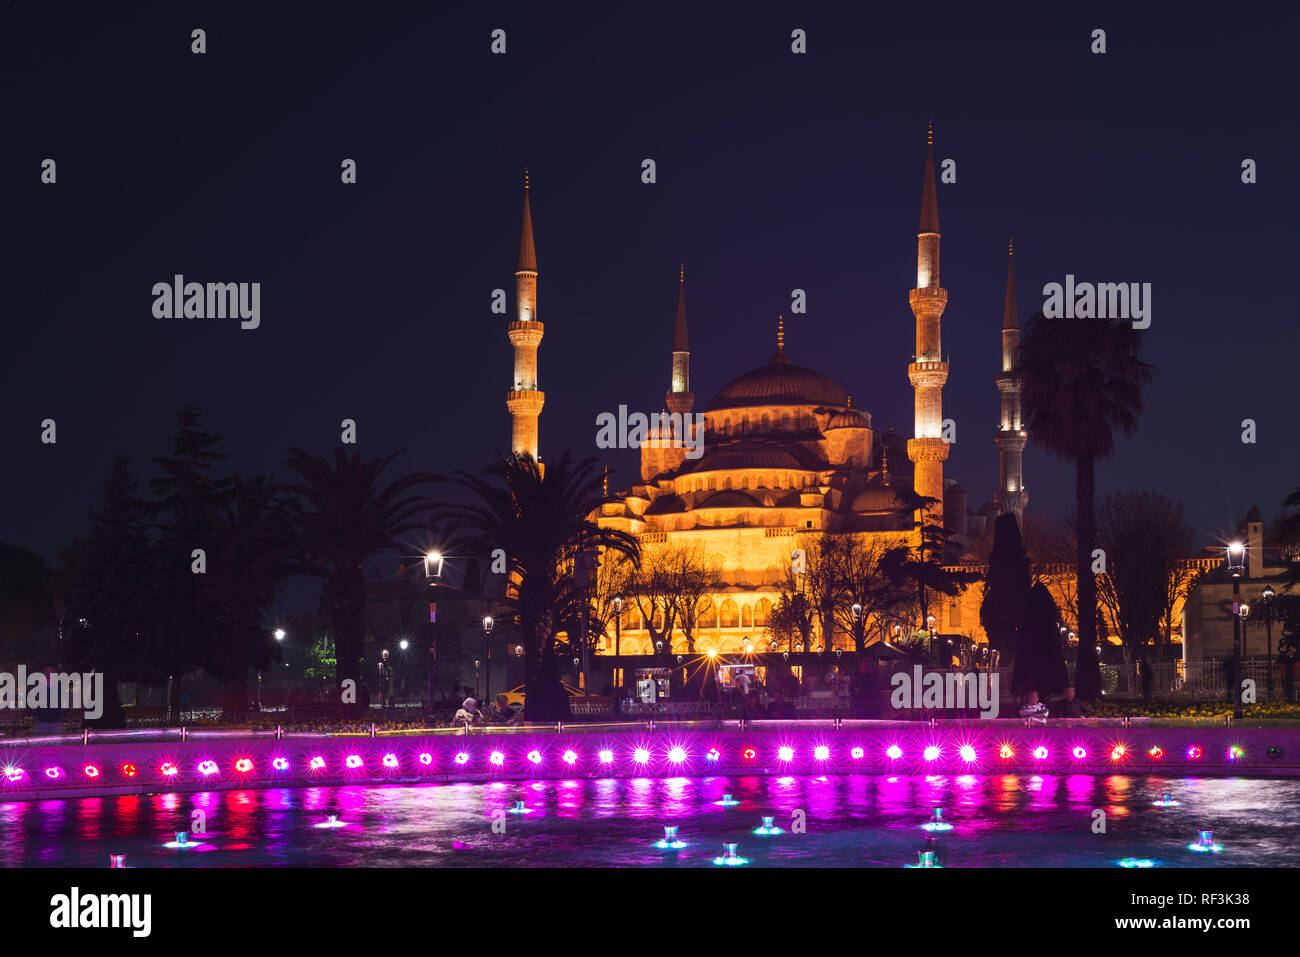 Brunnen in der Sultanahmet Gegend am Abend Zeit. Mehrfarbige streams vor dem Hintergrund der Blauen Moschee. Entfernt Ort: Istanbul, Türkei Stockfoto